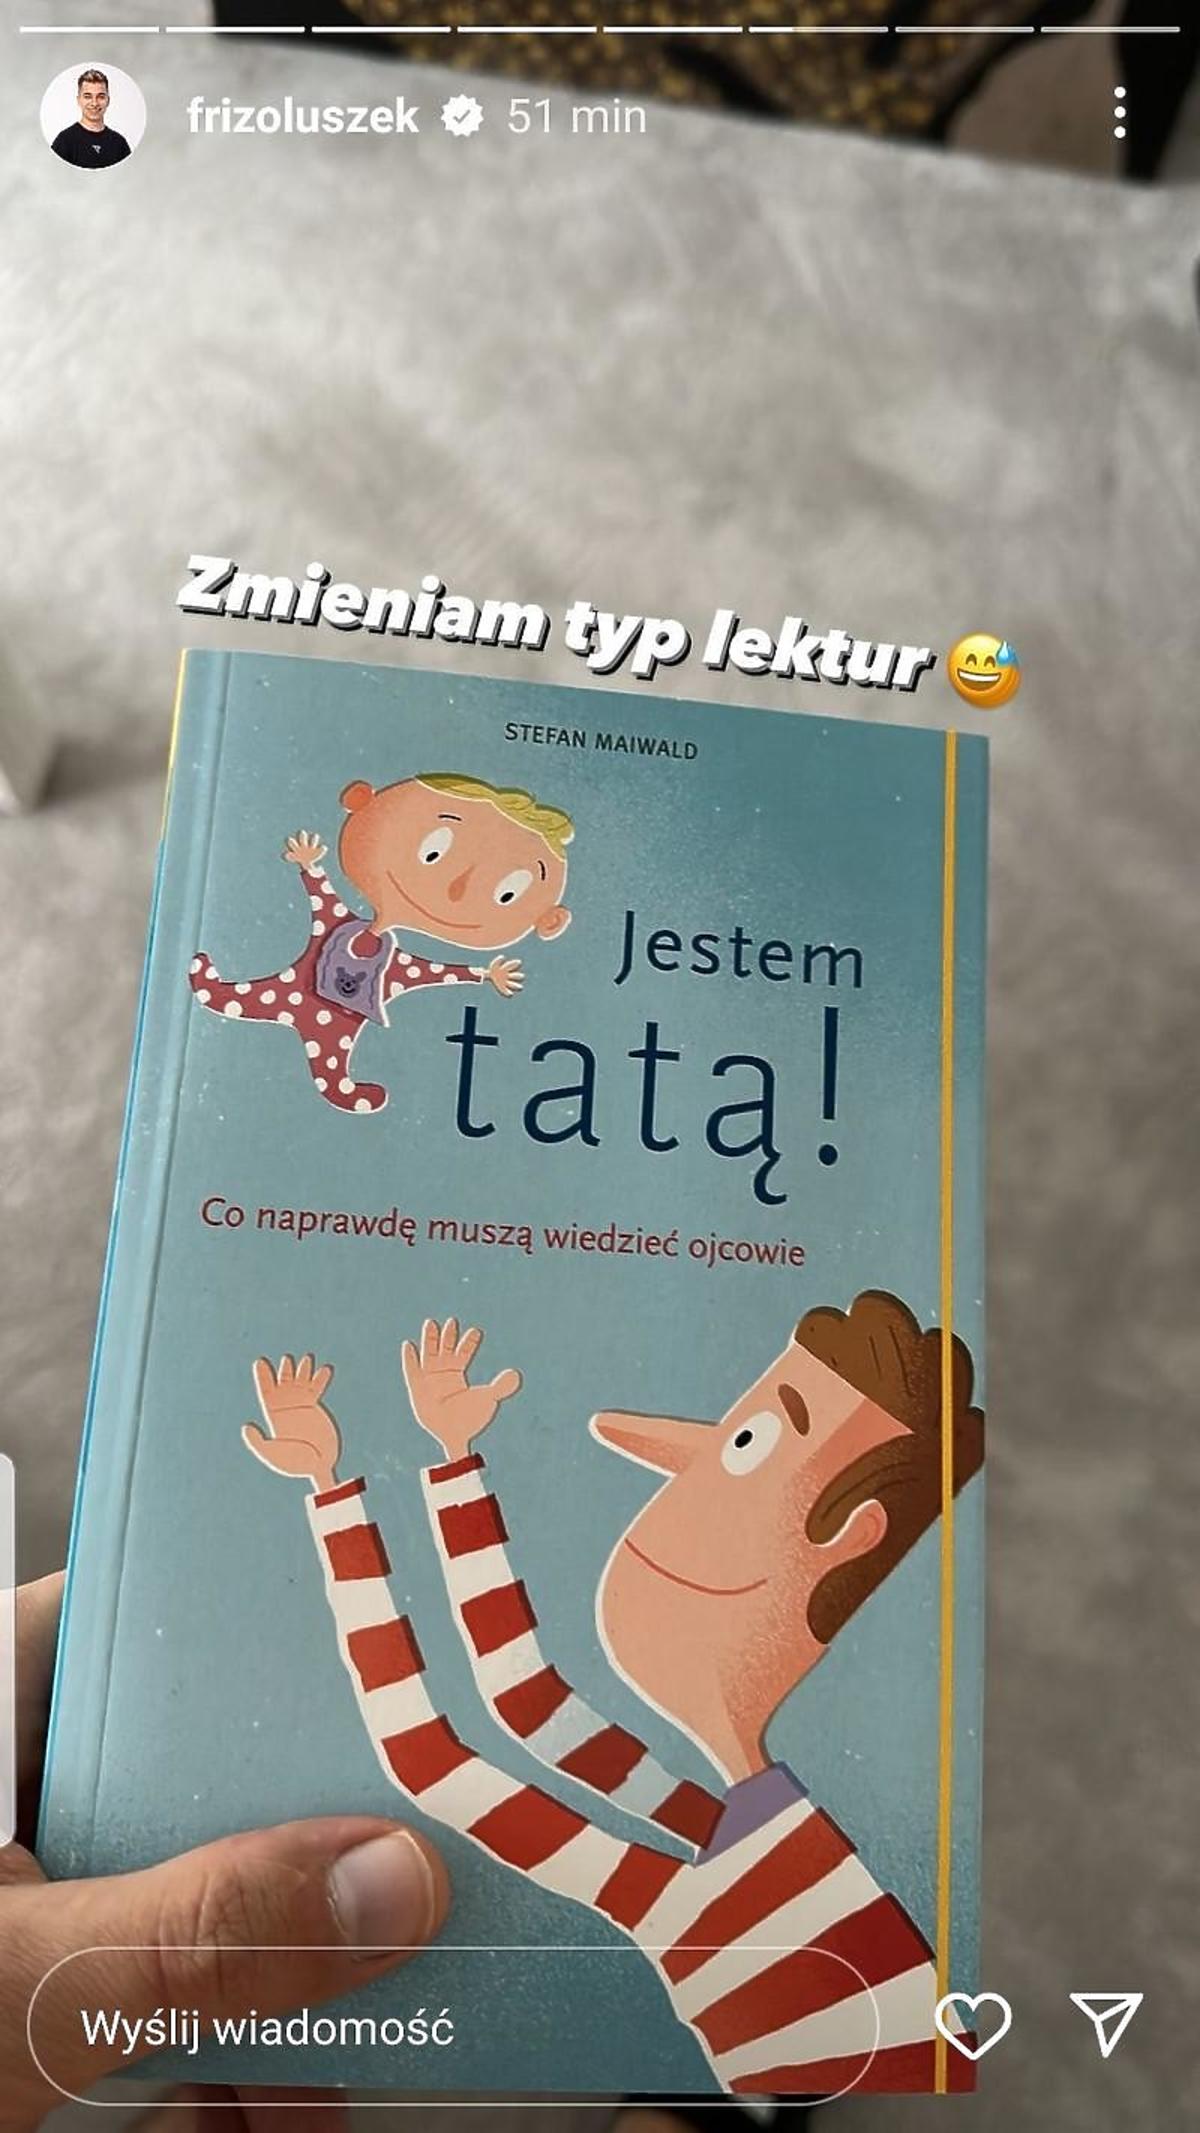 Okładka książki o rodzicielstwie z InstaStories Friza